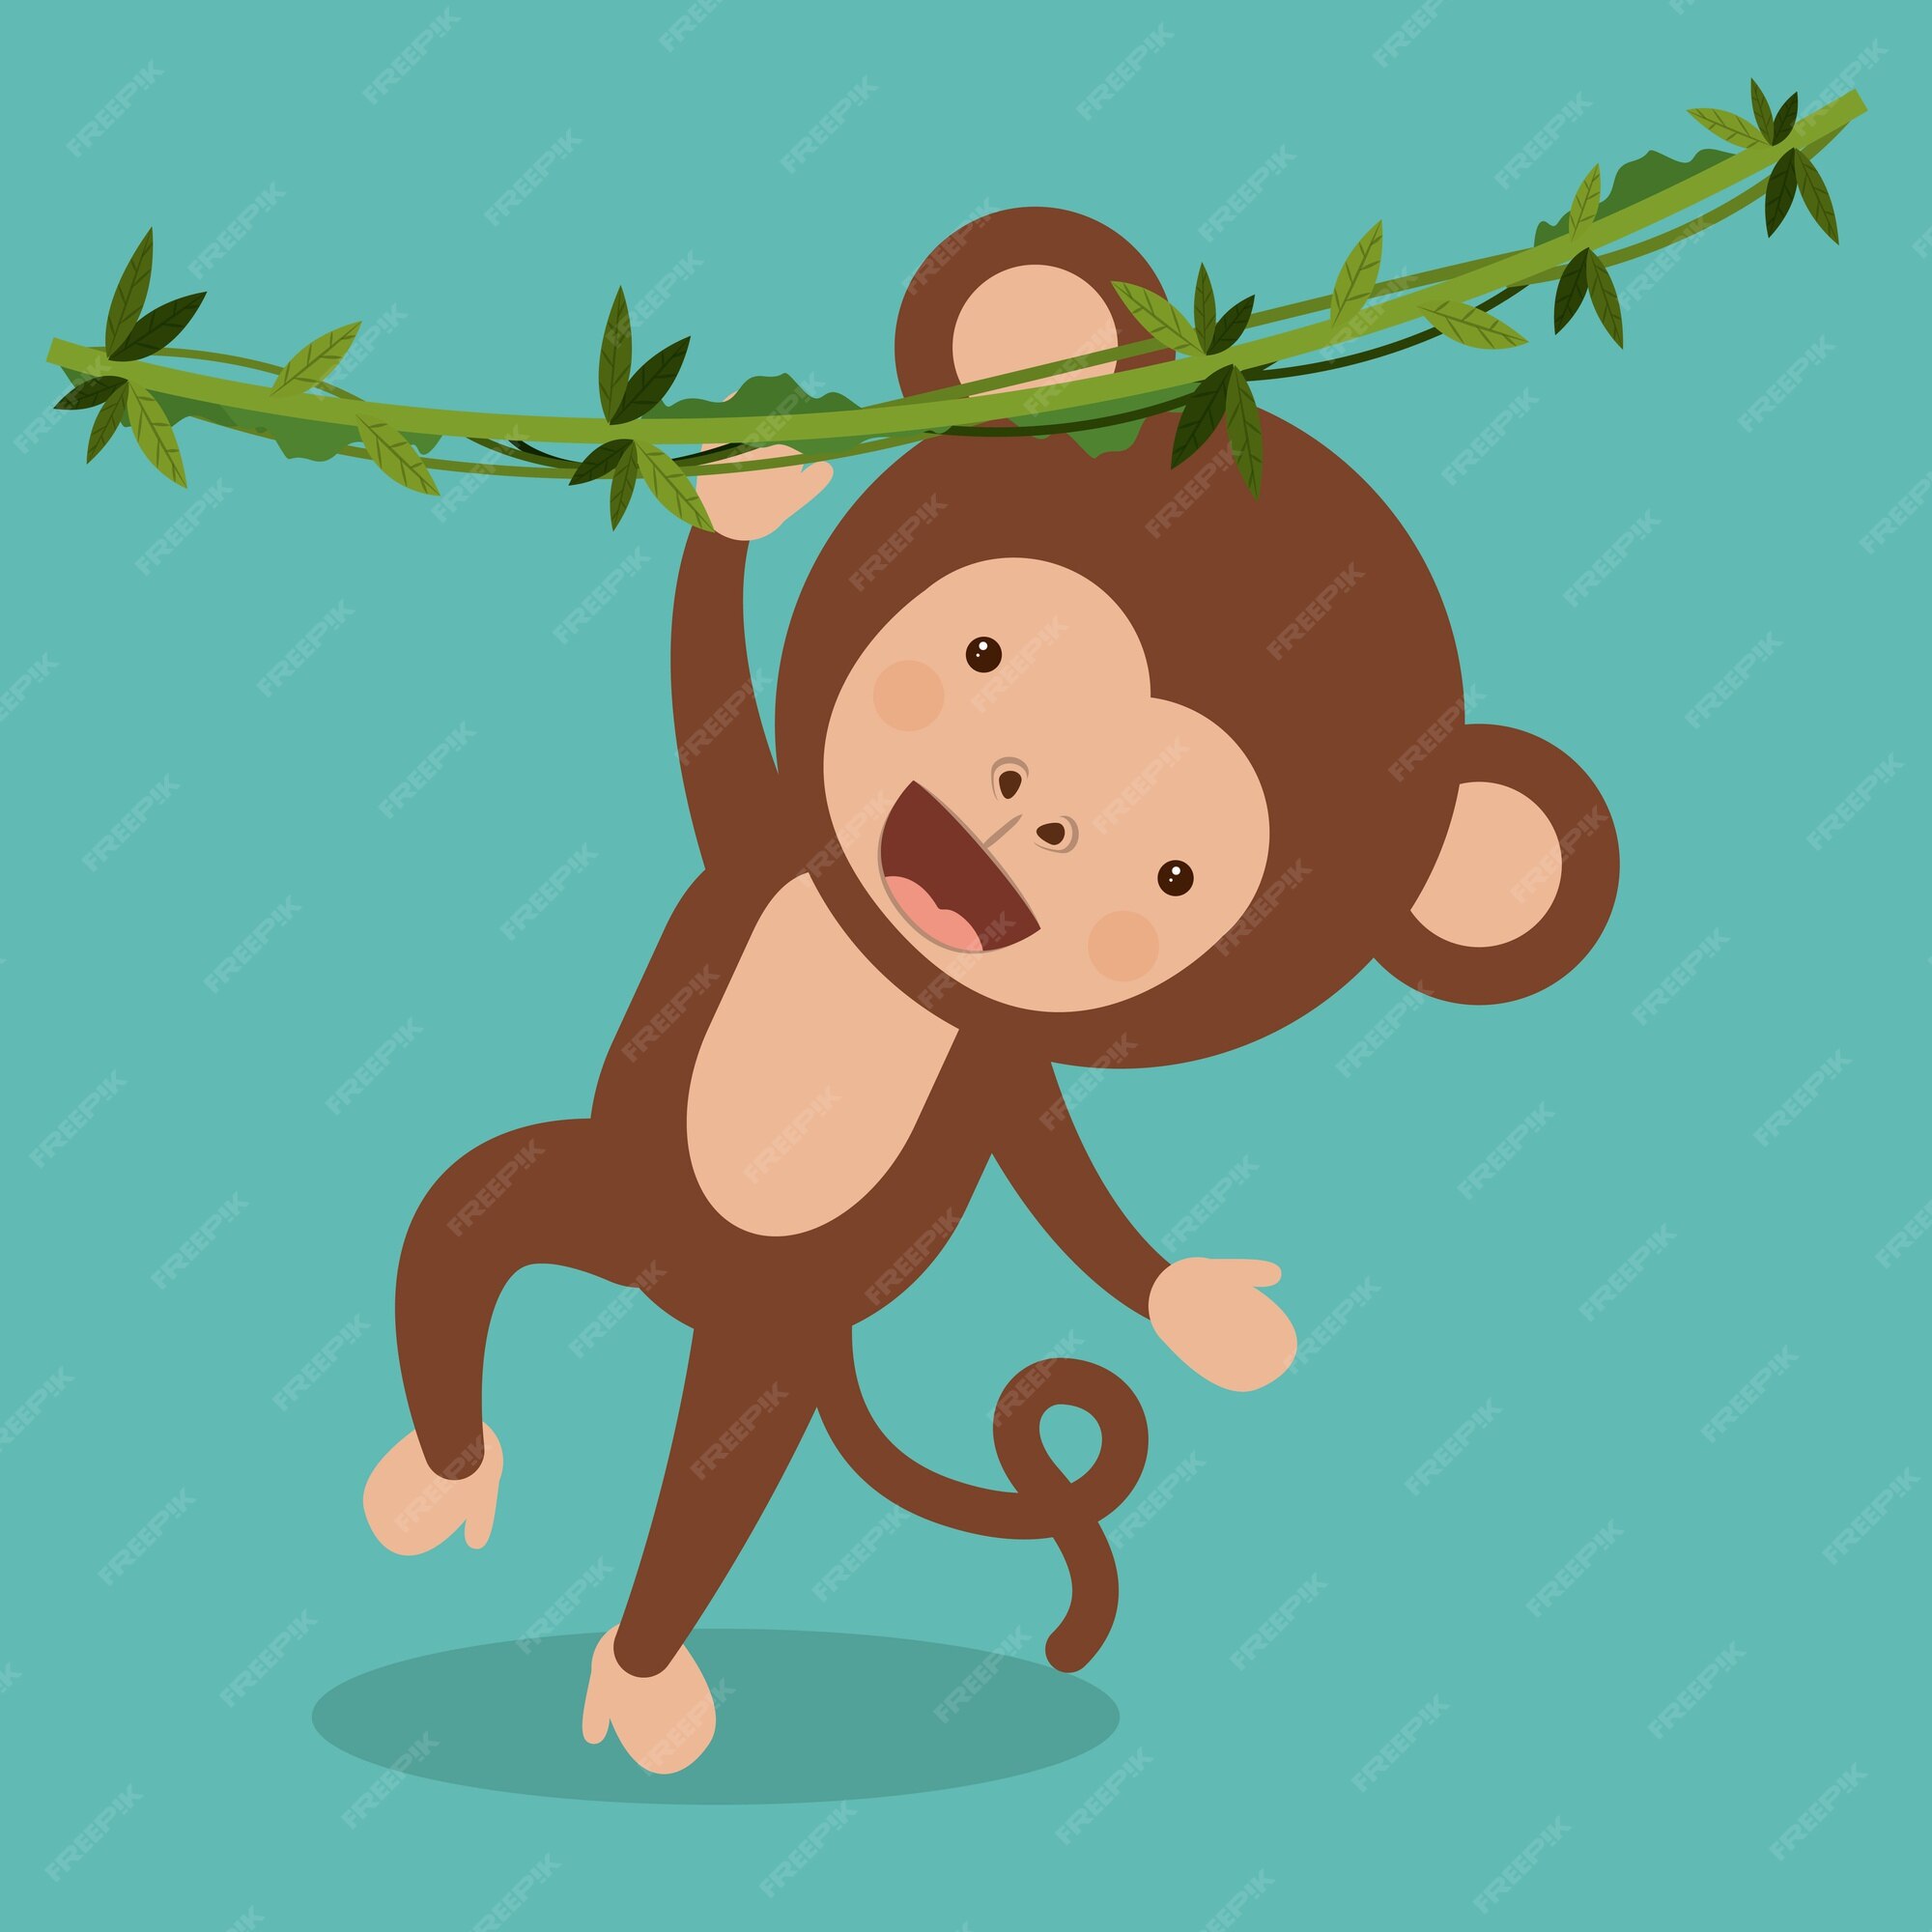 Vetores de Ícone De Macaco Engraçado Dos Desenhos Animados Ilustração Em  Vetor De Desenho Macaco Descrito e mais imagens de Macaco - iStock